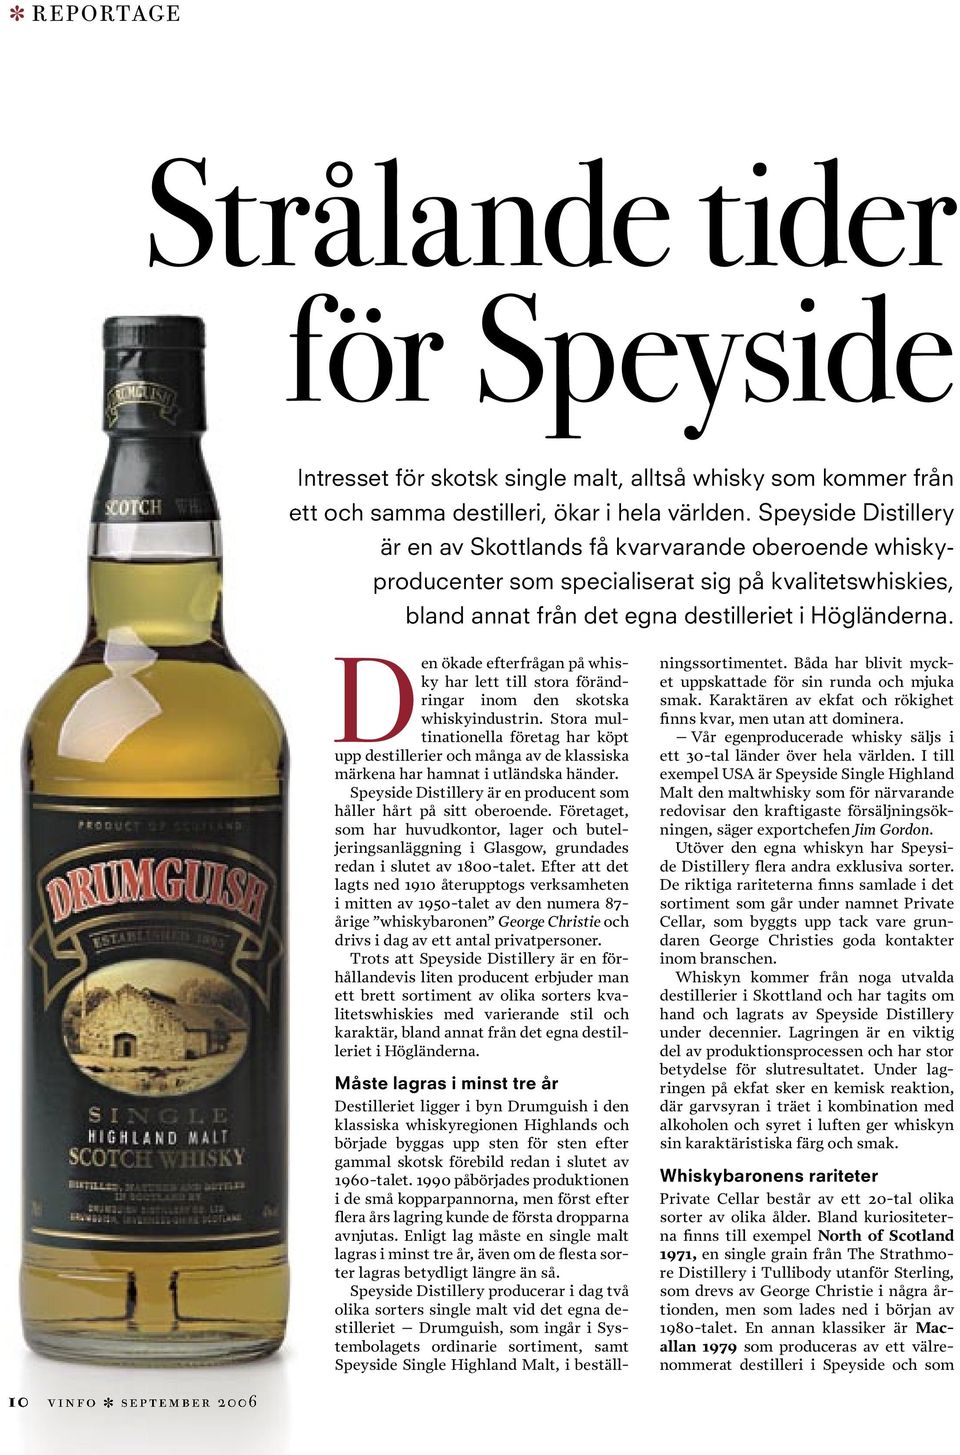 Den ökade efterfrågan på whisky har lett till stora förändringar inom den skotska whiskyindustrin.